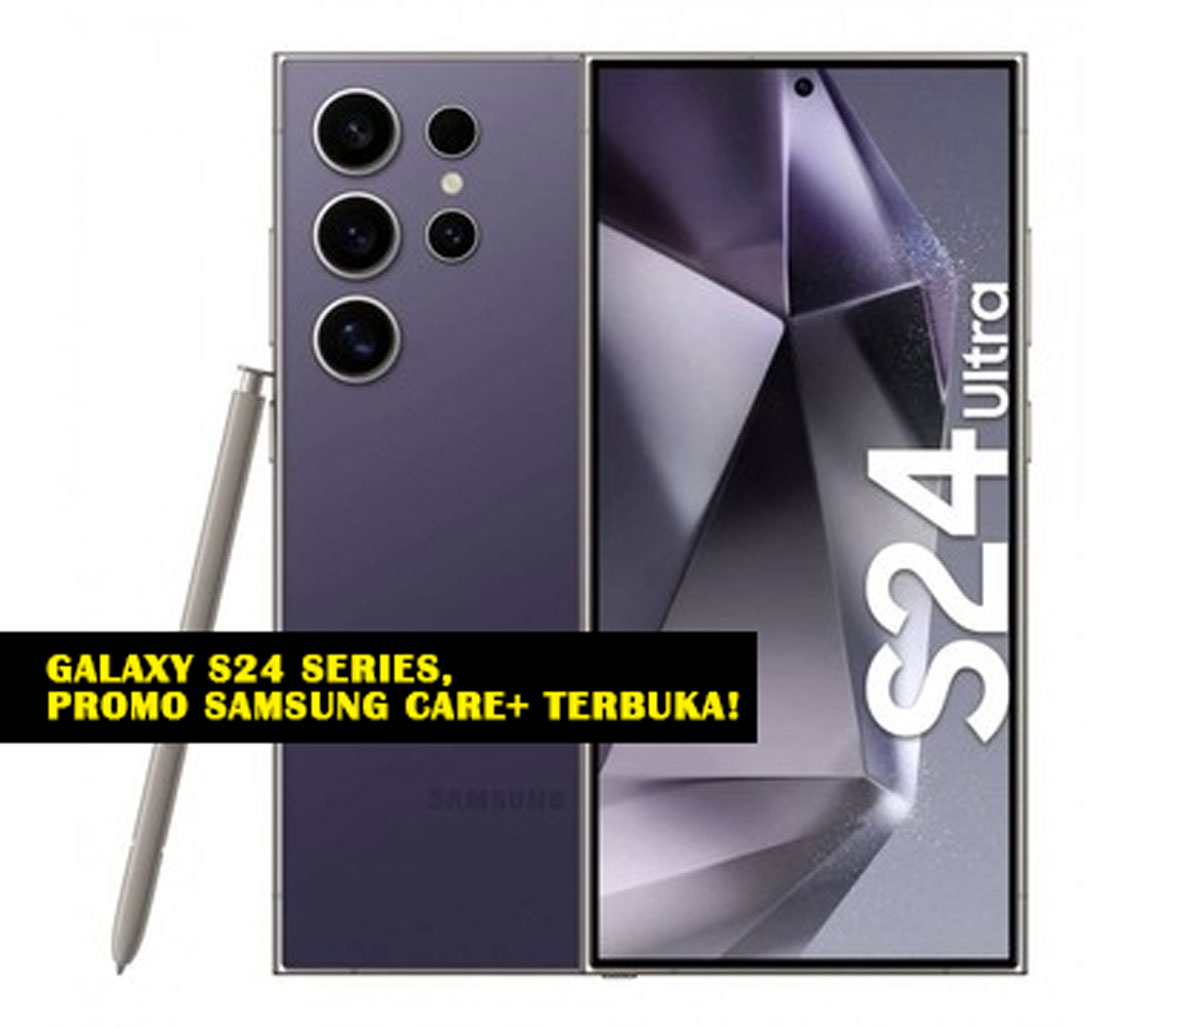 Mengintip Rahasia Proteksi Total: Galaxy S24 Series, Promo Samsung Care+ Terbuka! Cek Keuntungan Eksklusifnya!